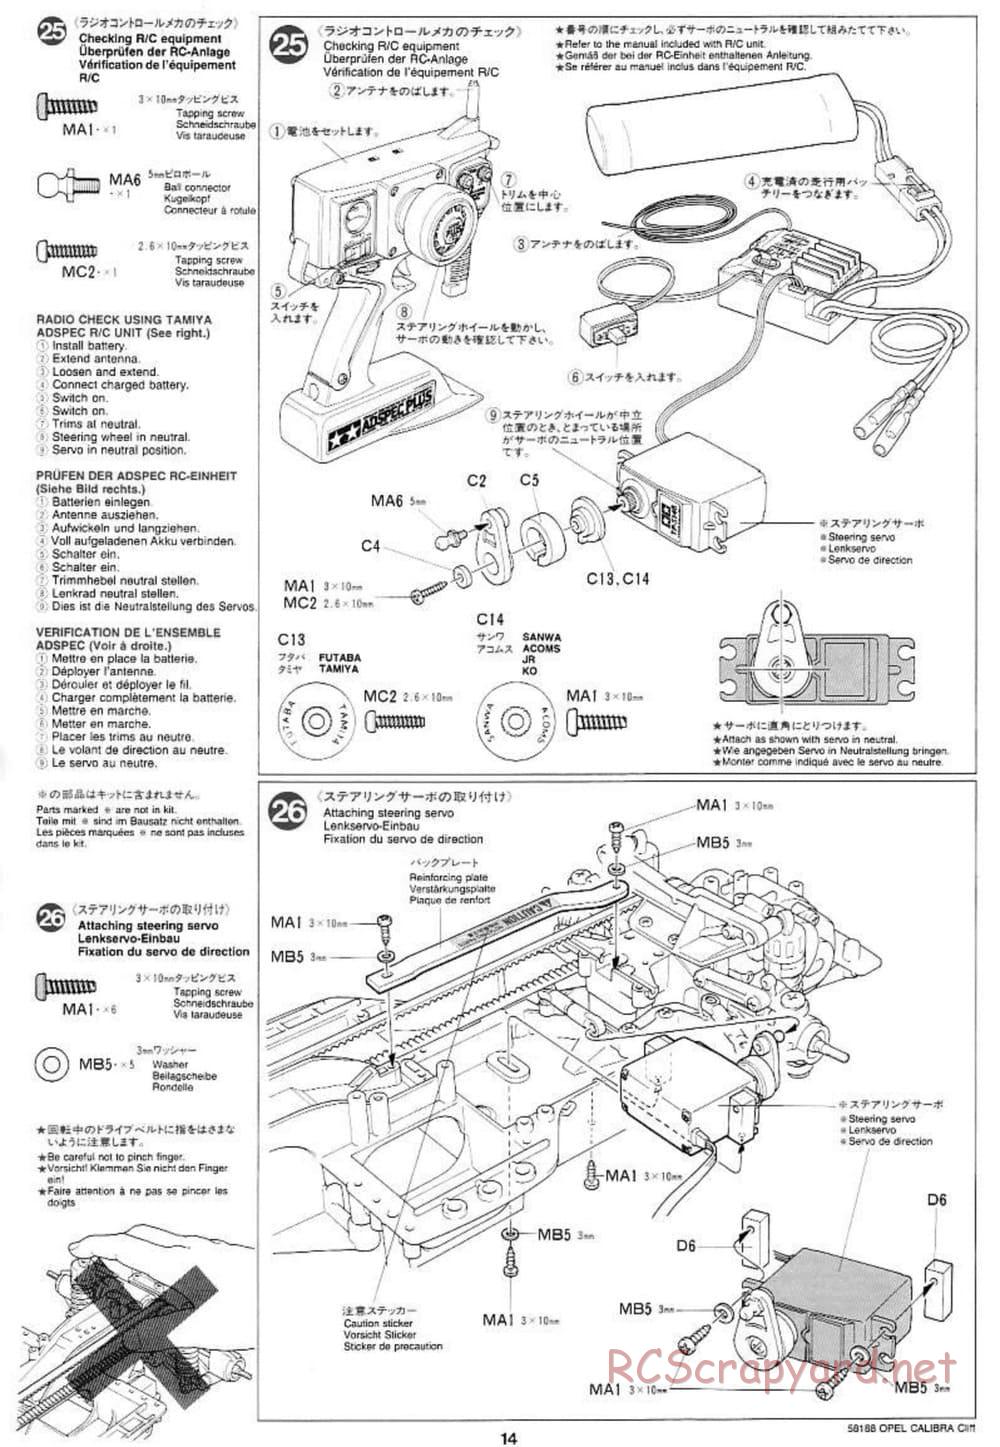 Tamiya - Opel Calibra Cliff - TA-03F Chassis - Manual - Page 14